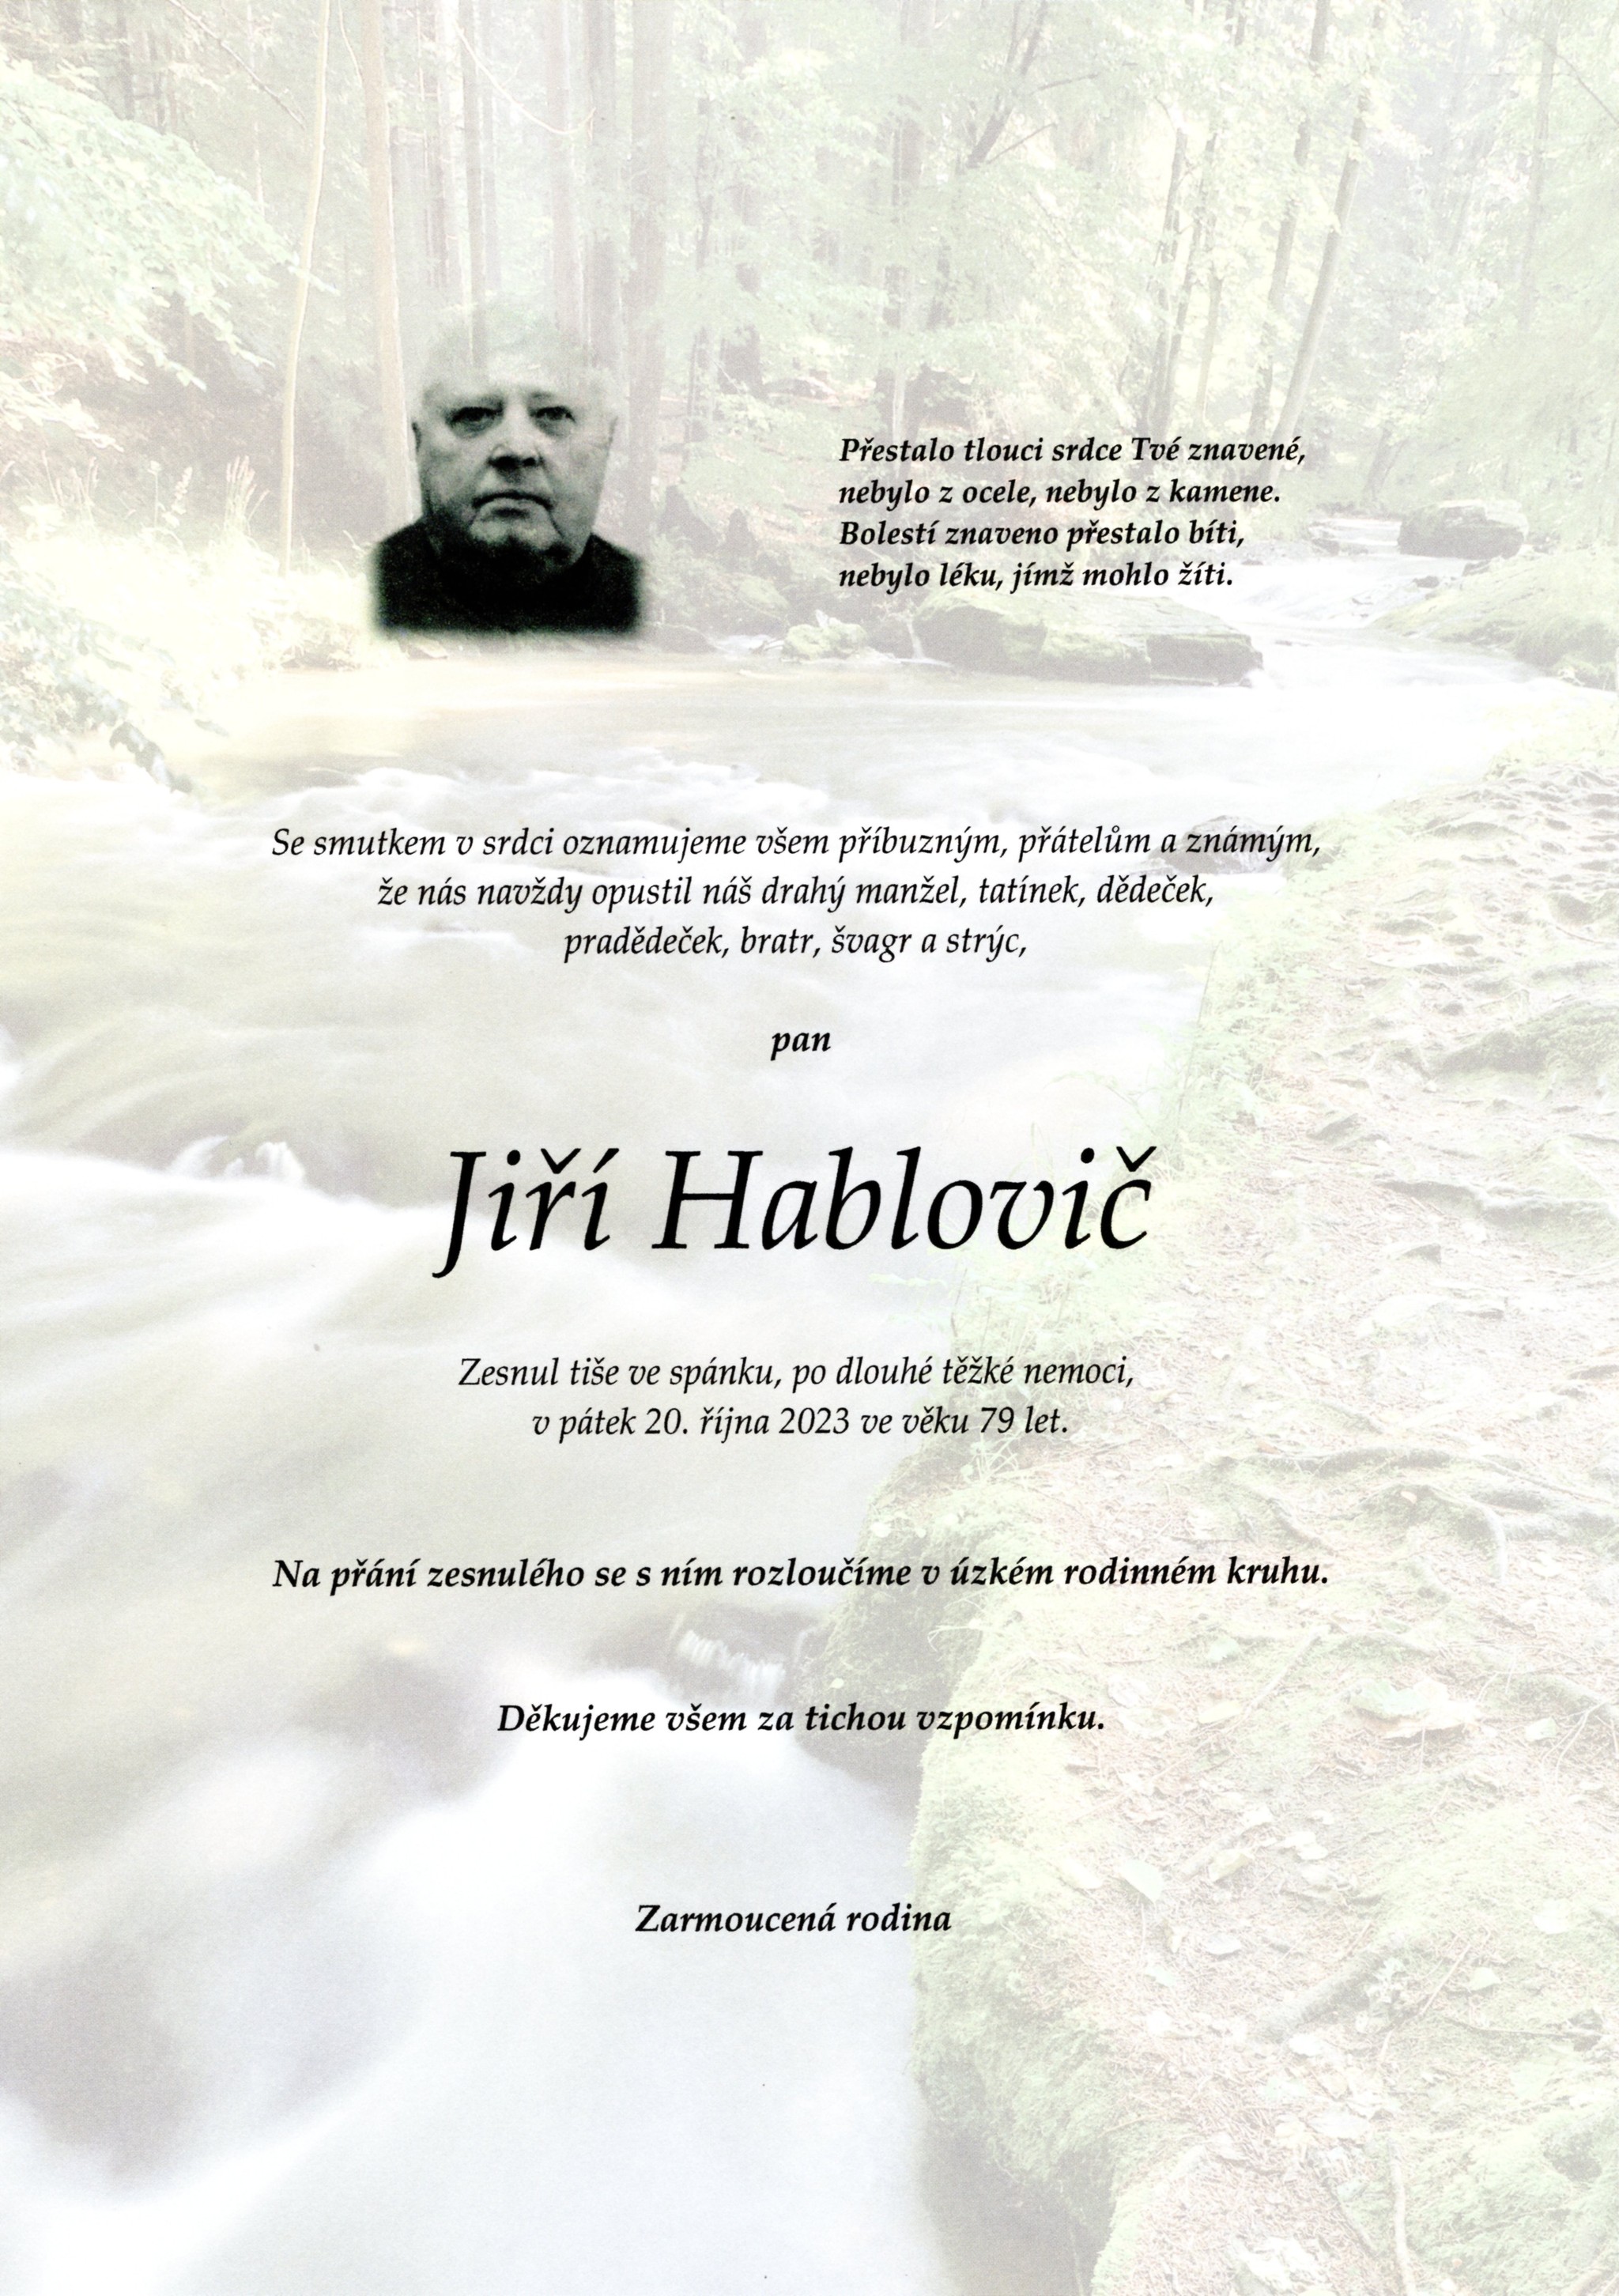 Jiří Hablovič